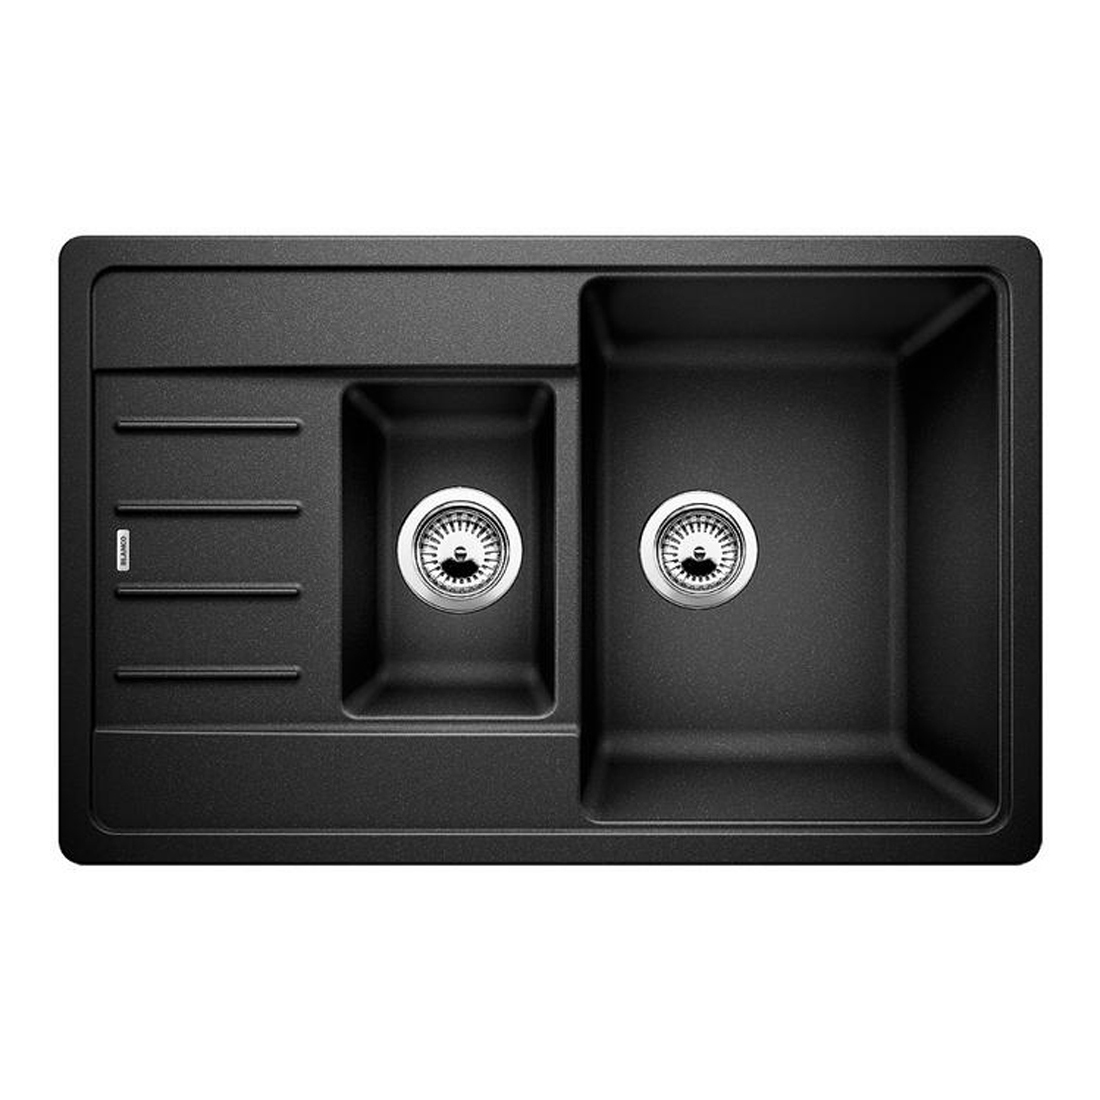 Кухонная мойка Blanco Legra 6 S Compact антрацит кухонная мойка florentina комби 860 антрацит